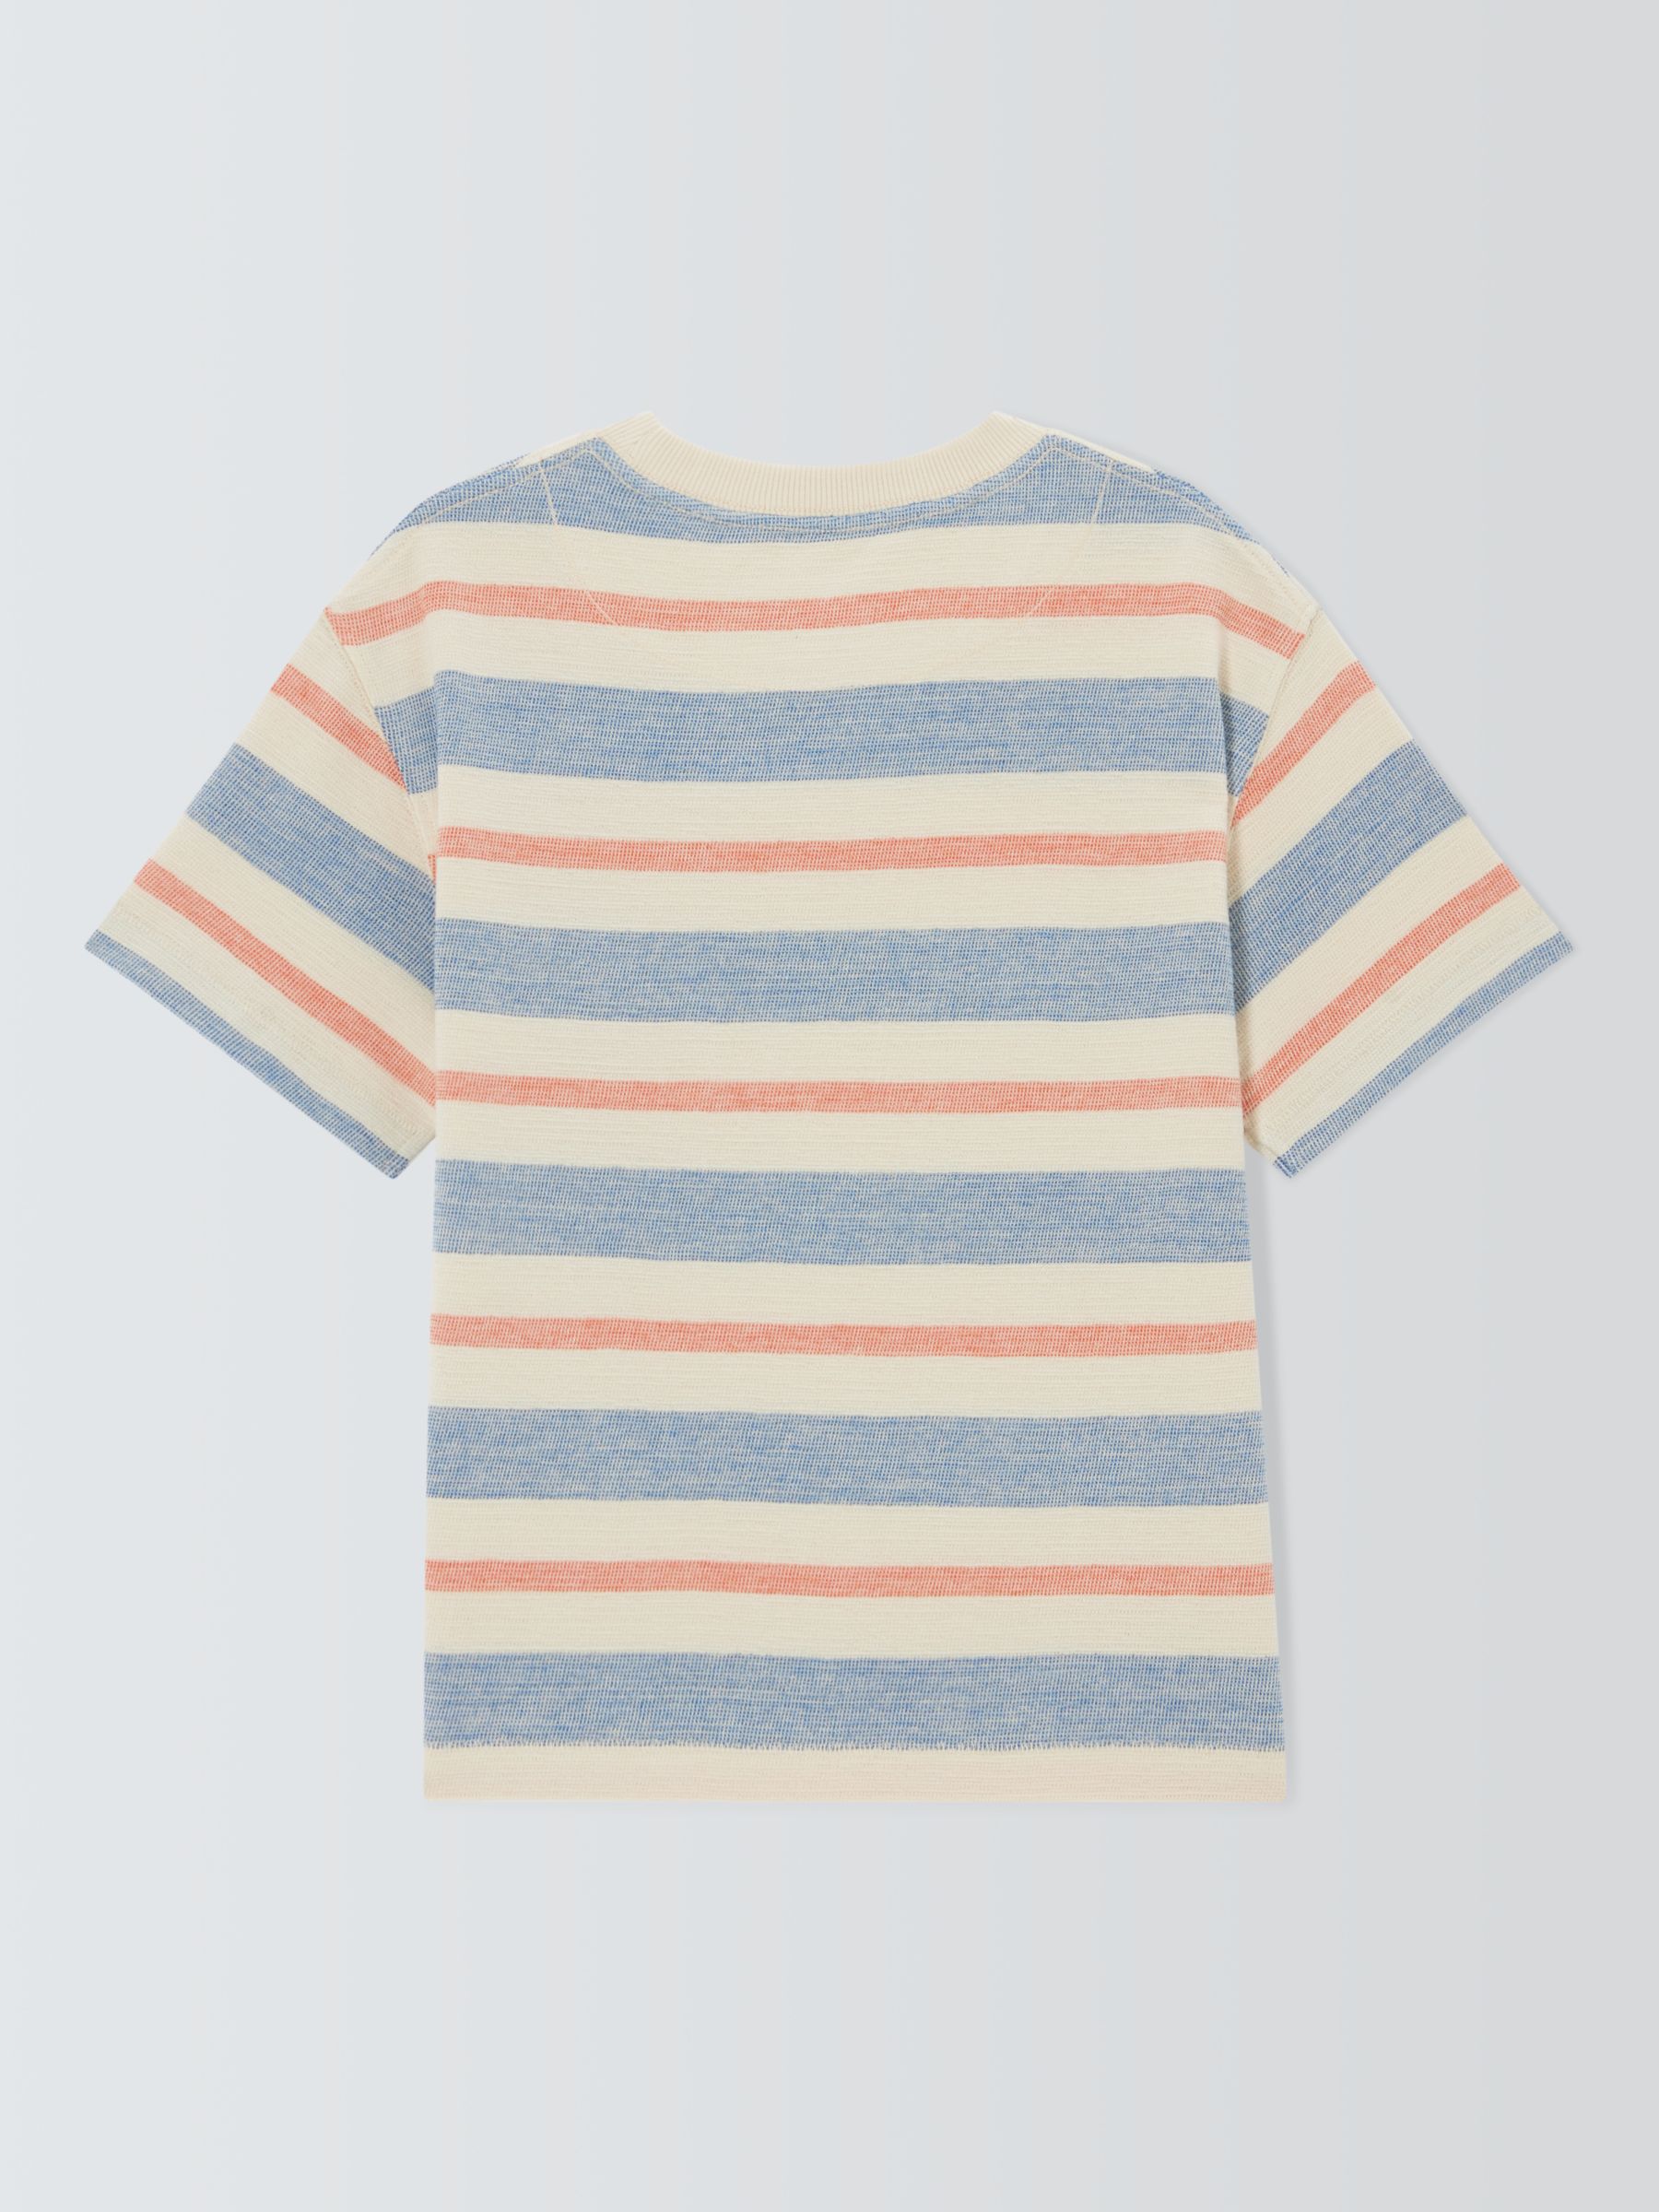 John Lewis Kids' Textured Stripe T-Shirt, Multi, 3 years